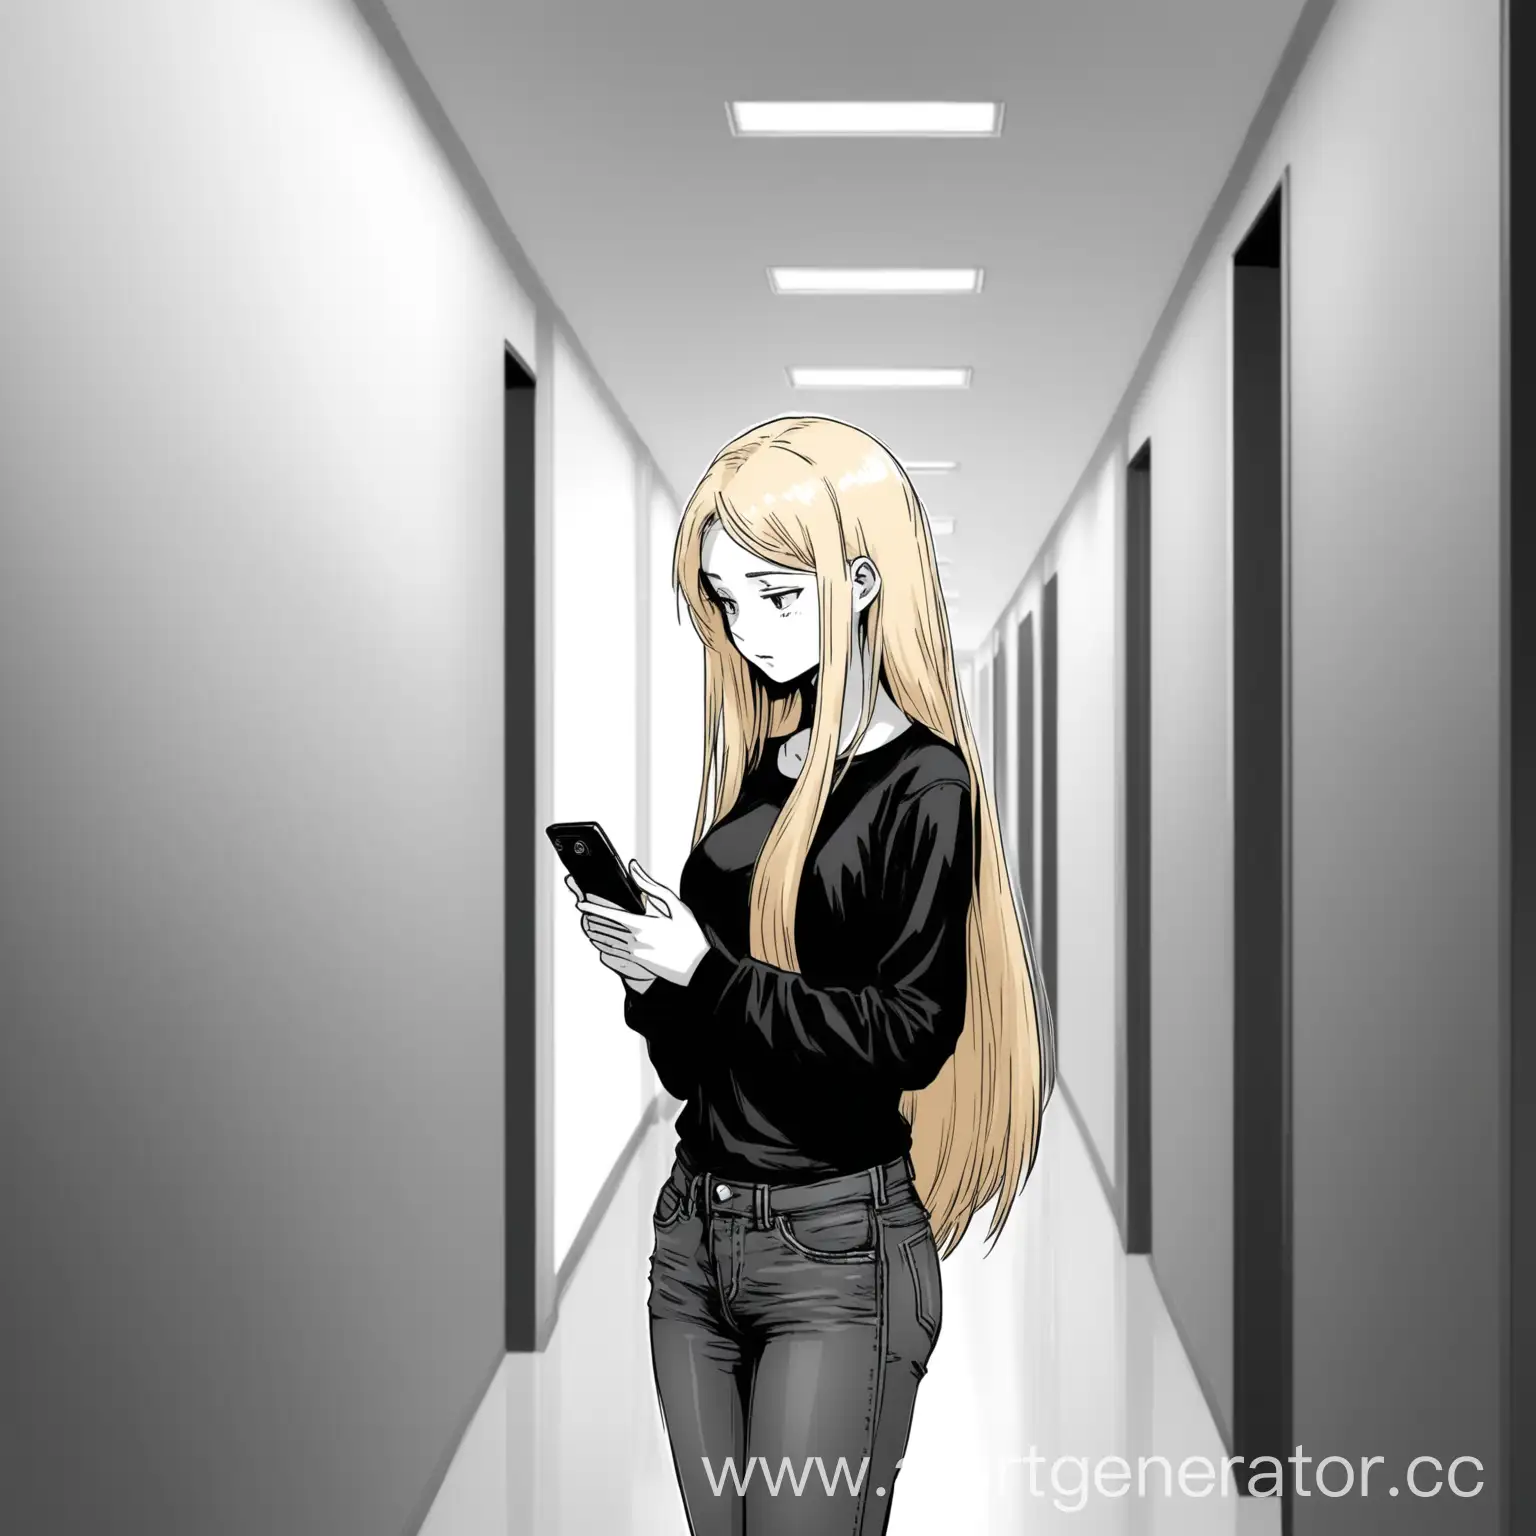 Черно-белая манга. Девушка блондинка с длинными волосами, в черном топе и джинсах, стоит в коридоре университета и смотрит в телефон